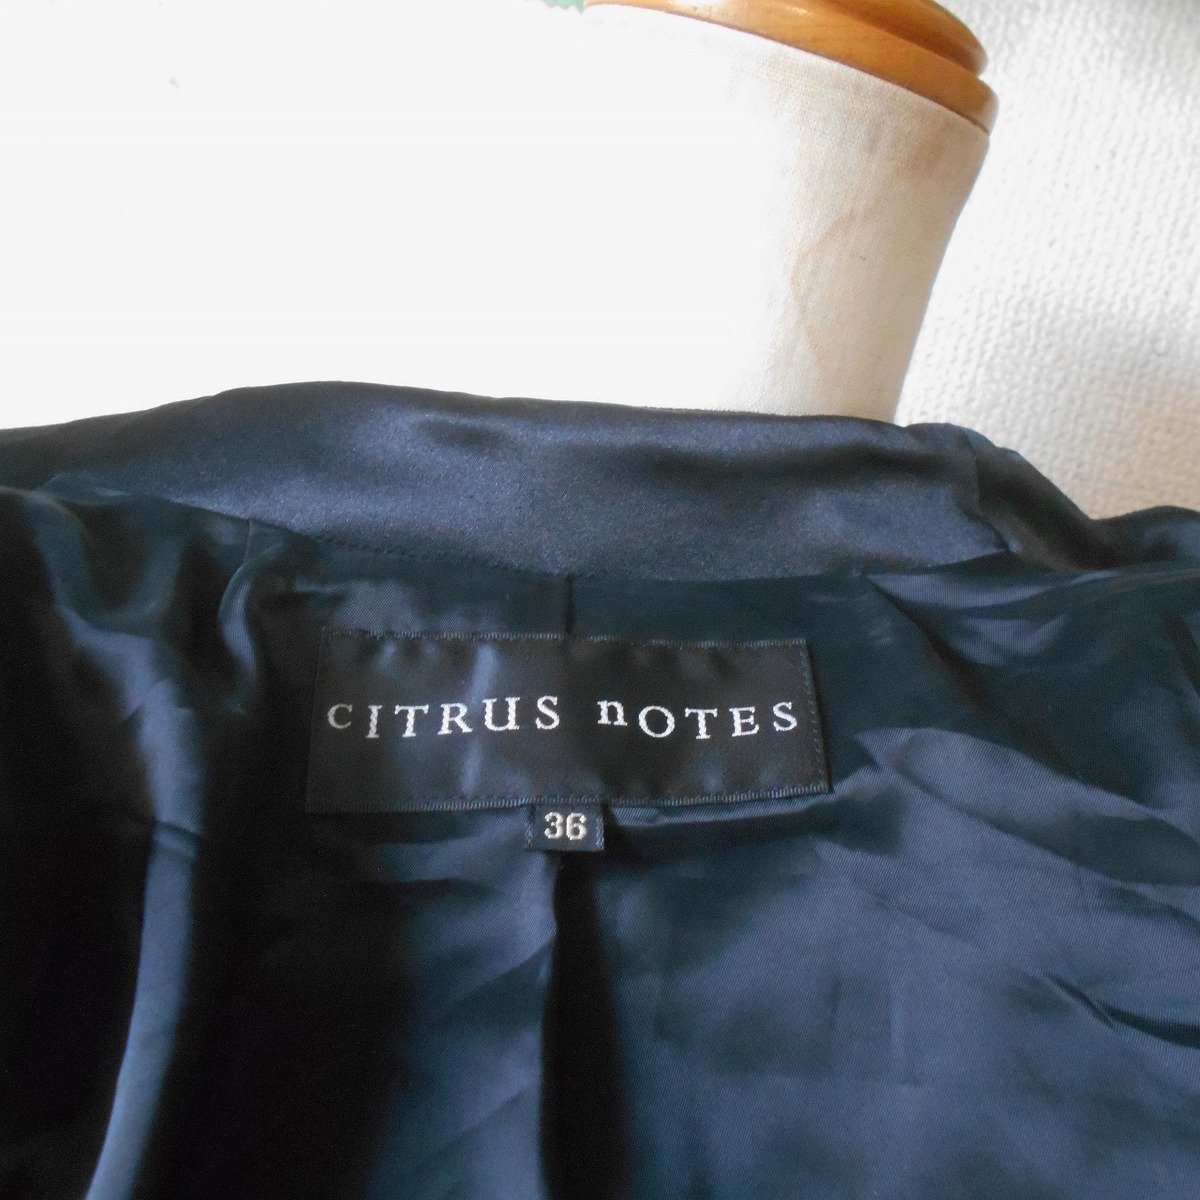  Citrus Notes CITRUS nOTES жакет женский 36 черный bell спальное место велюр сделано в Японии 